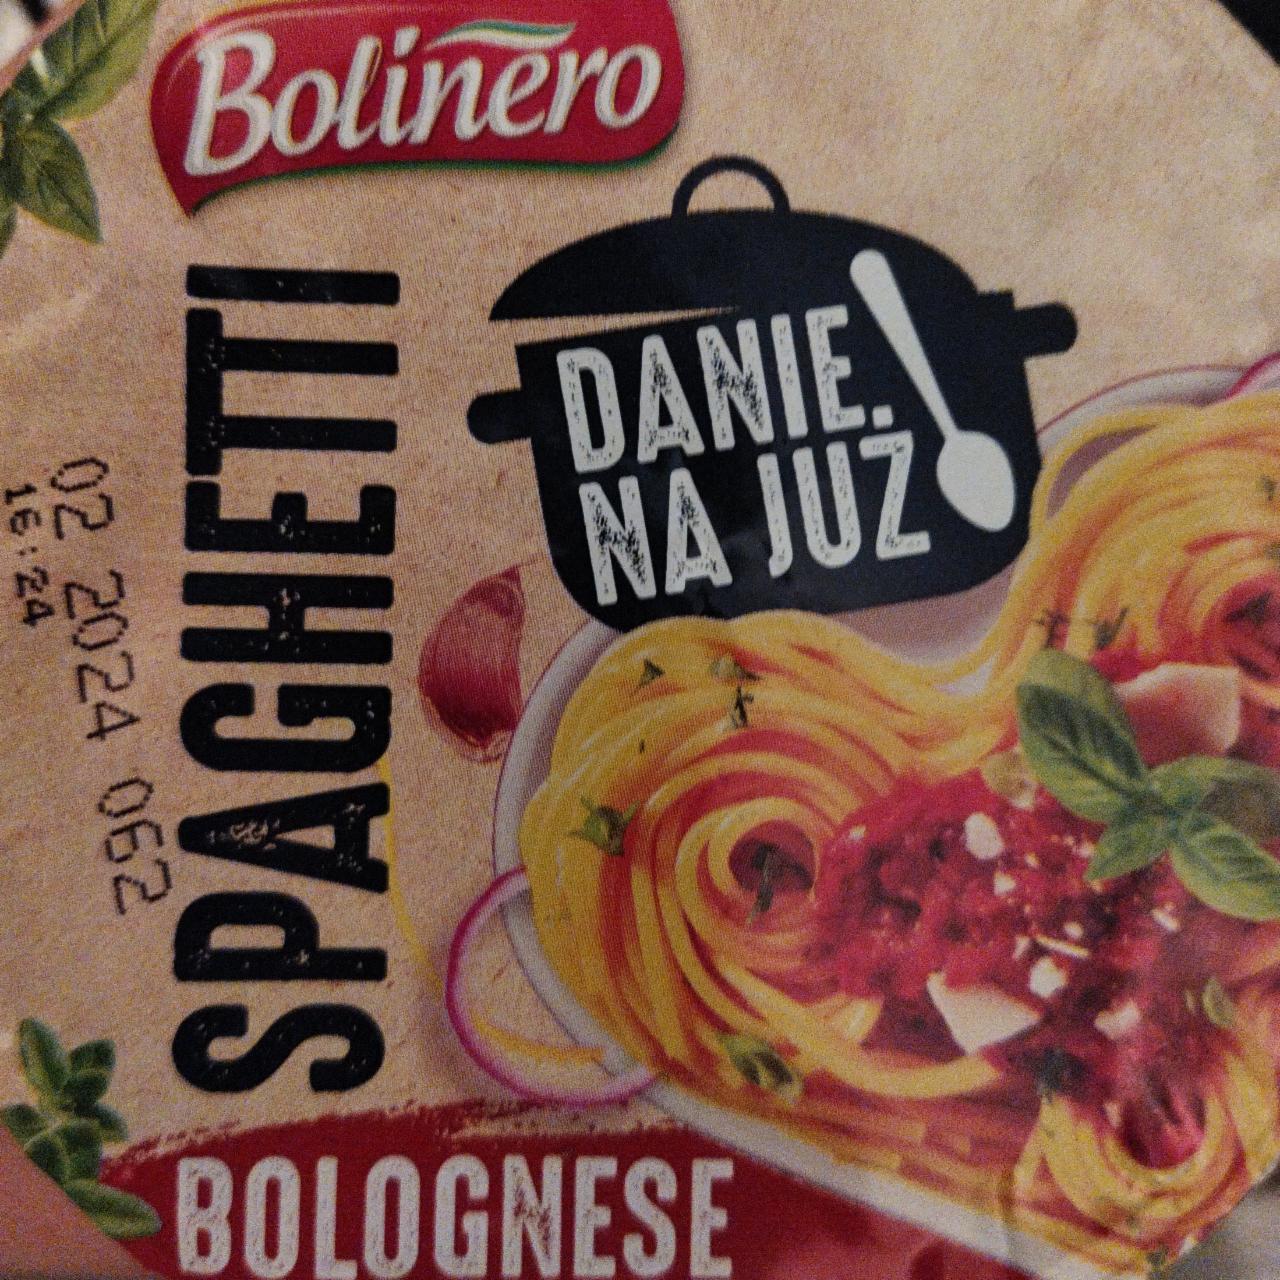 Zdjęcia - Spaghetti Bolognese Bolinero